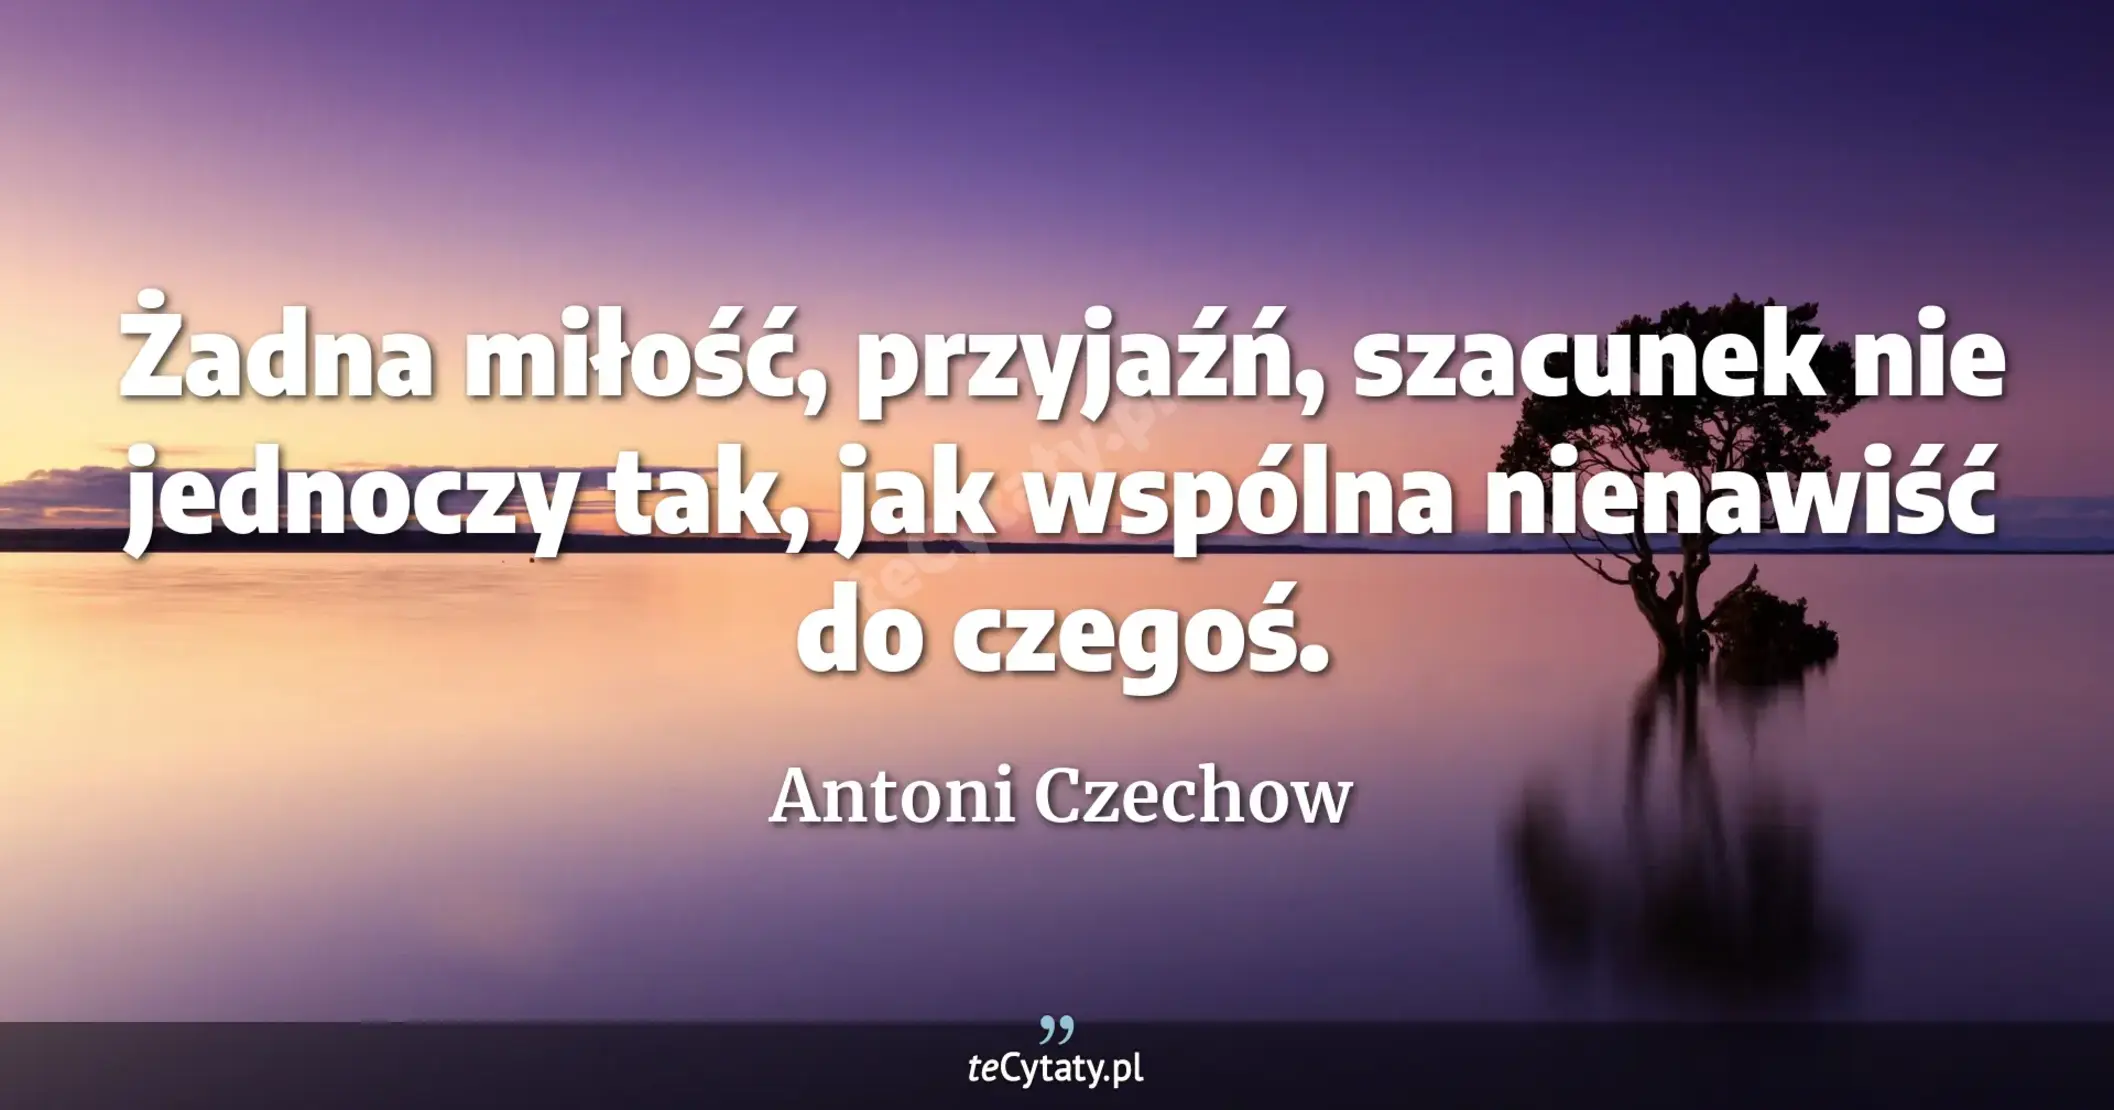 Żadna miłość, przyjaźń, szacunek nie jednoczy tak, jak wspólna nienawiść do czegoś. - Antoni Czechow